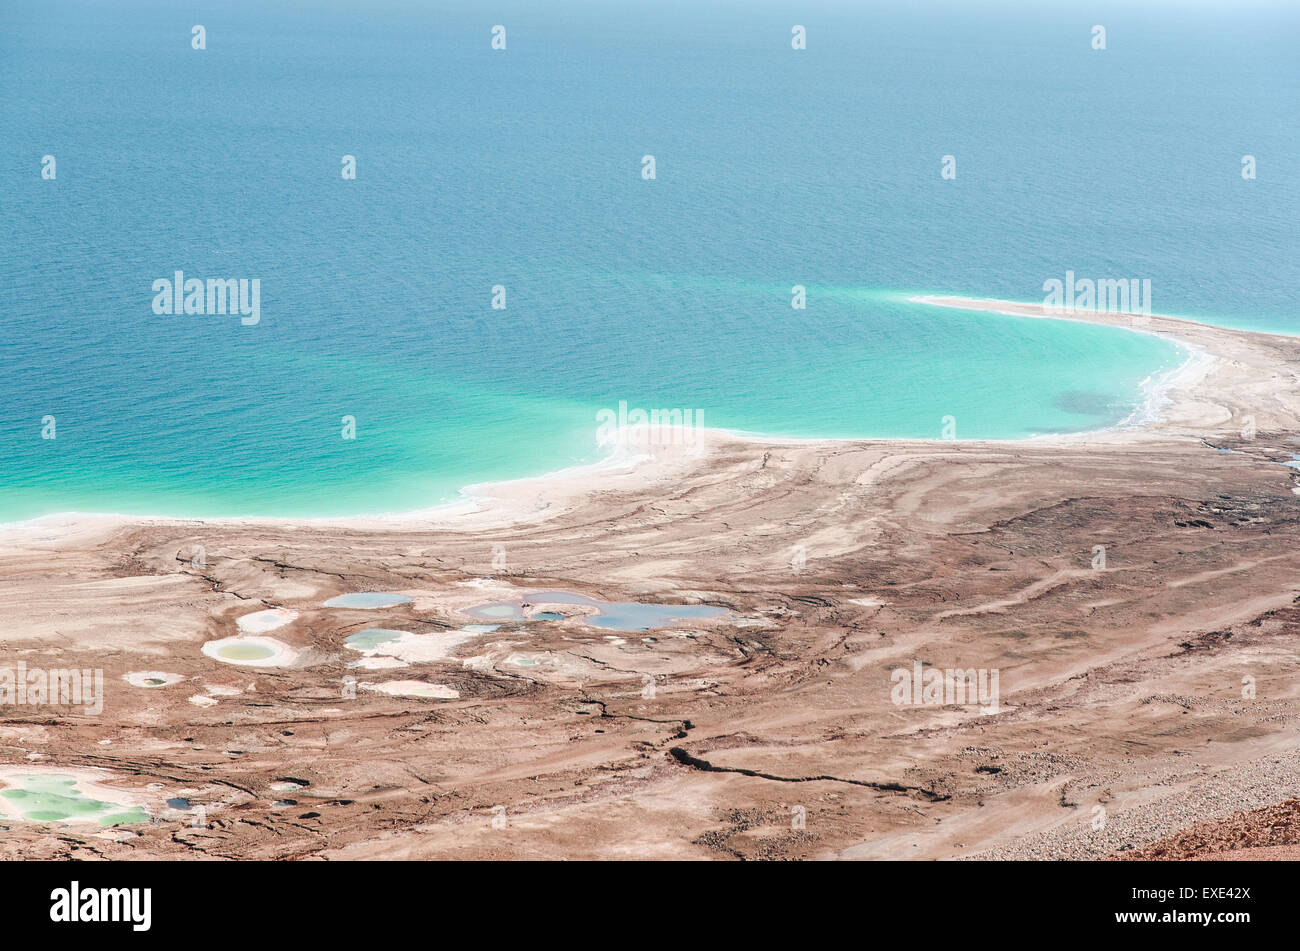 L'environnement naturel sur les rives de la mer Morte en cas de catastrophe. Niveau d'eau diminue et la surface diminue rapidement en raison de l'activité humaine. Banque D'Images